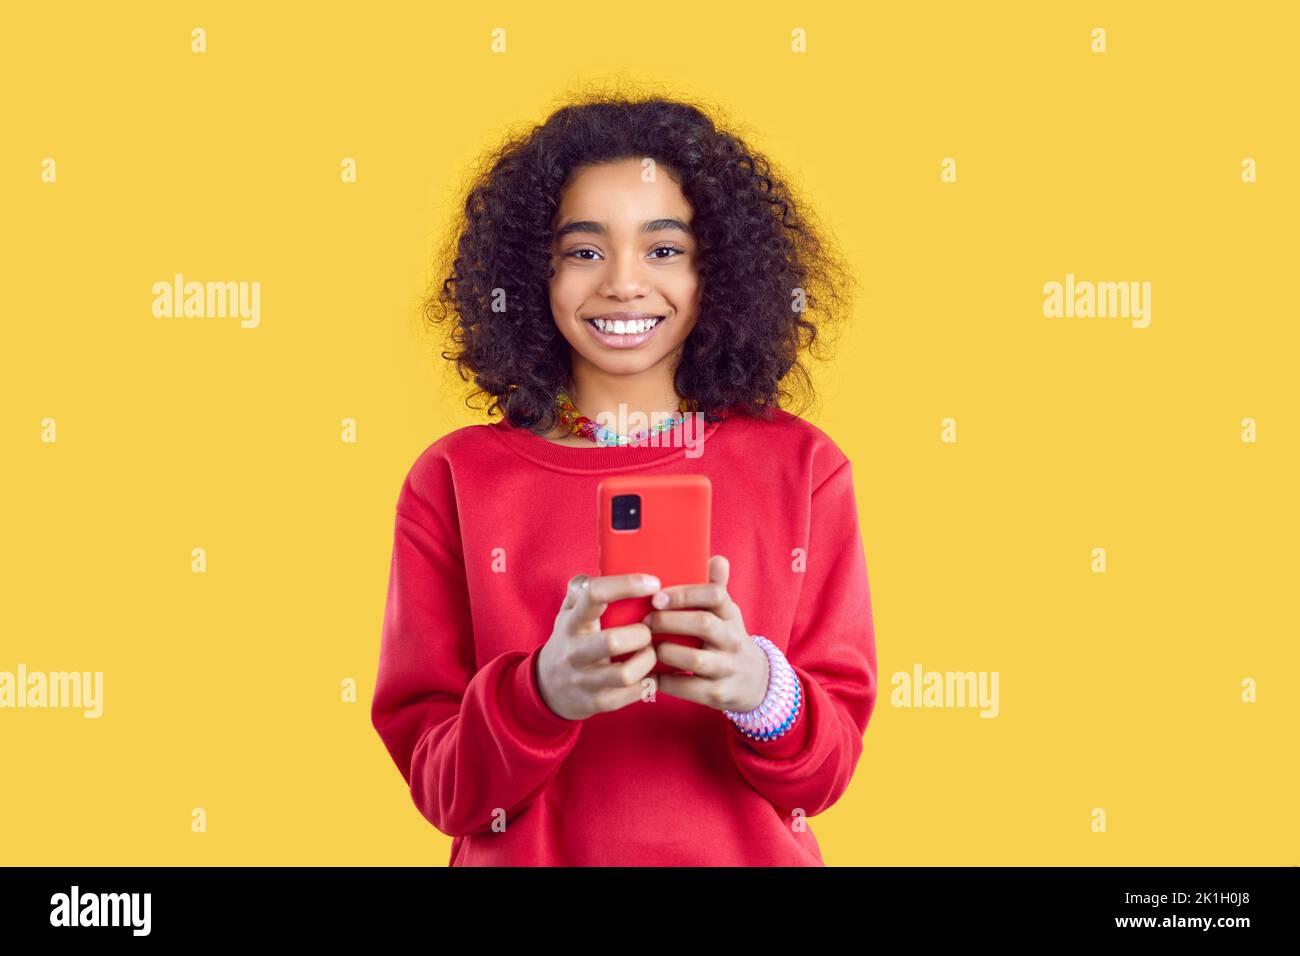 Lächelndes, ethnisches Mädchen nutzt ein modernes Mobiltelefon für Online-Spiele oder zur Kommunikation mit Freunden Stockfoto